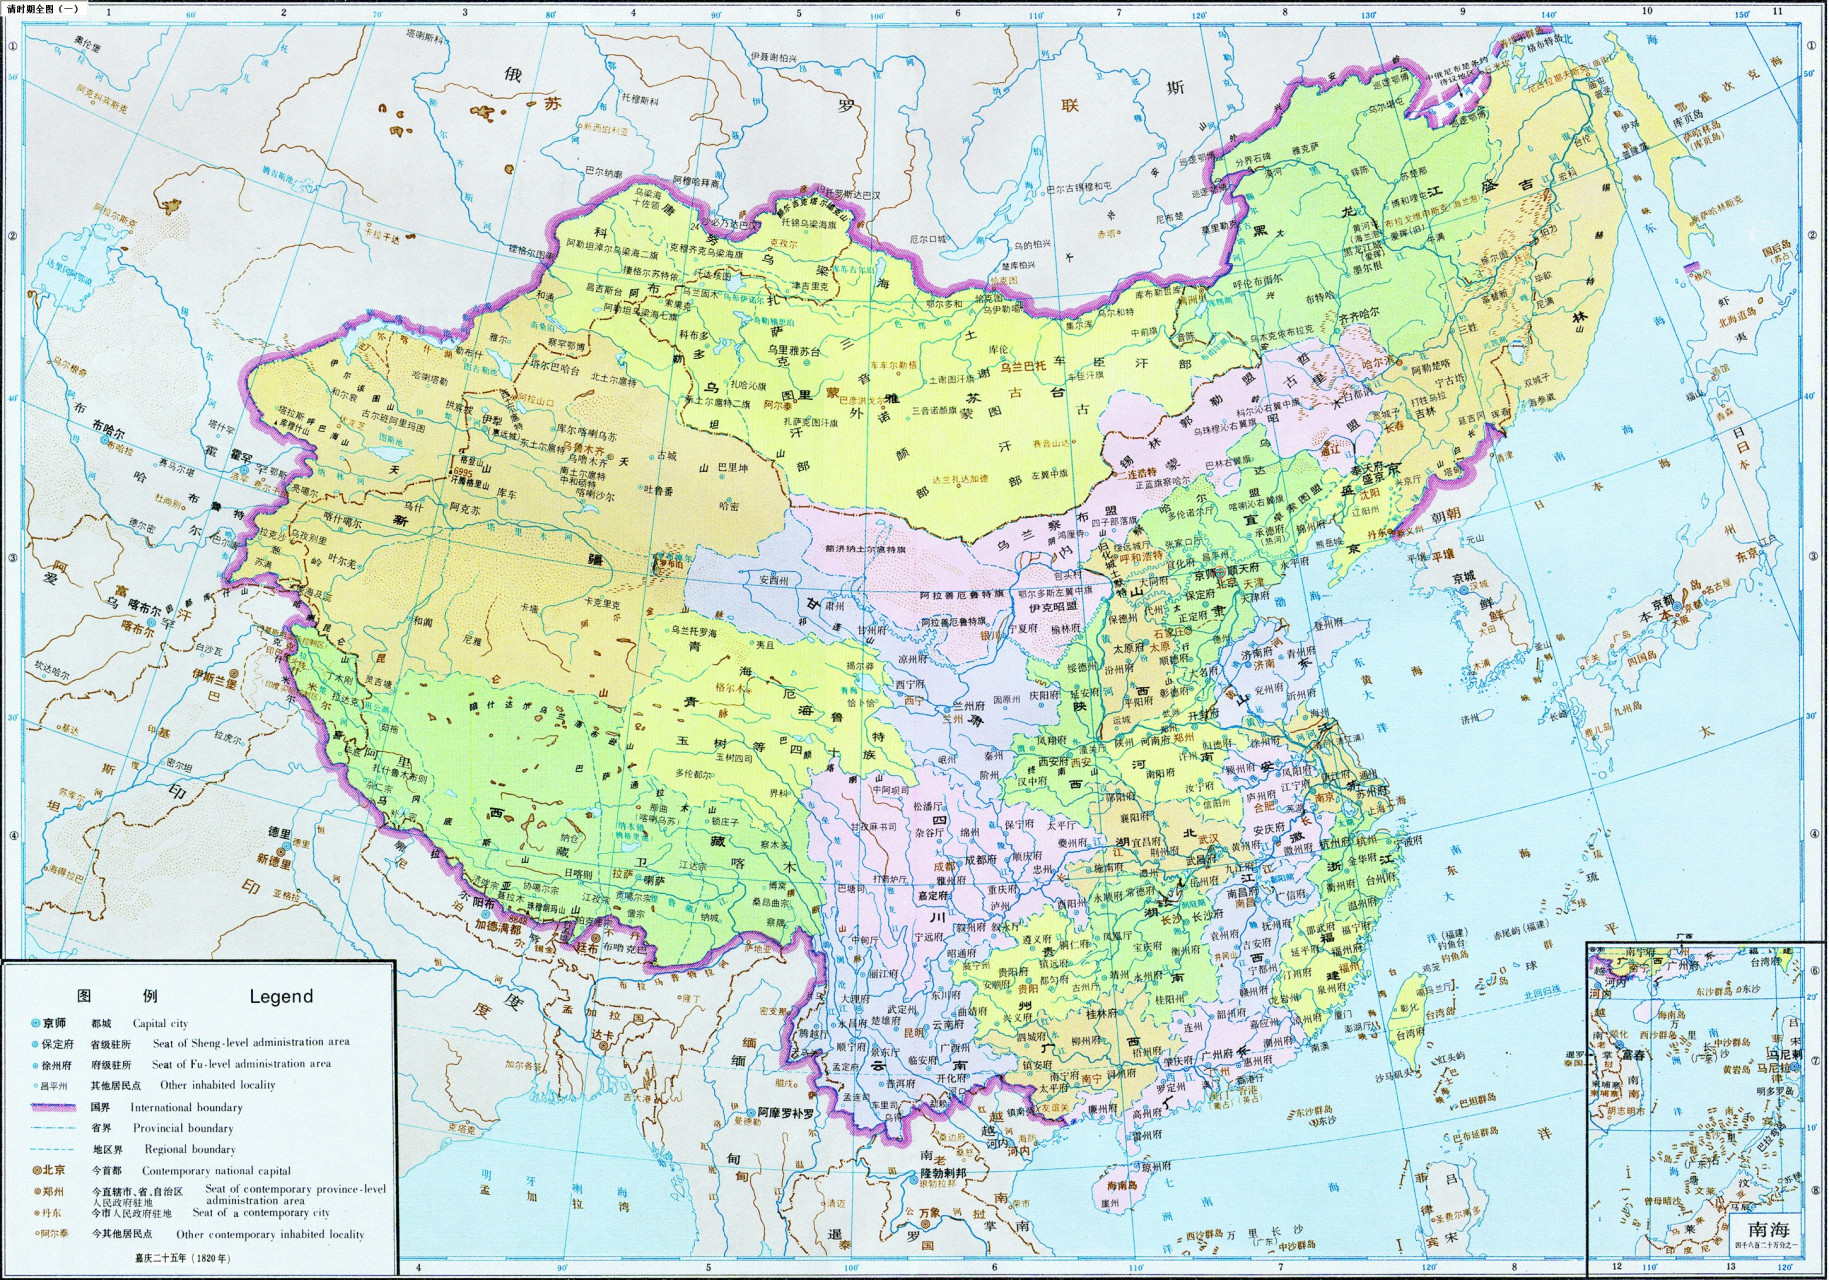 中国清朝疆域图,清朝康雍乾时期,实际控制面积大约1600万平方公里(以